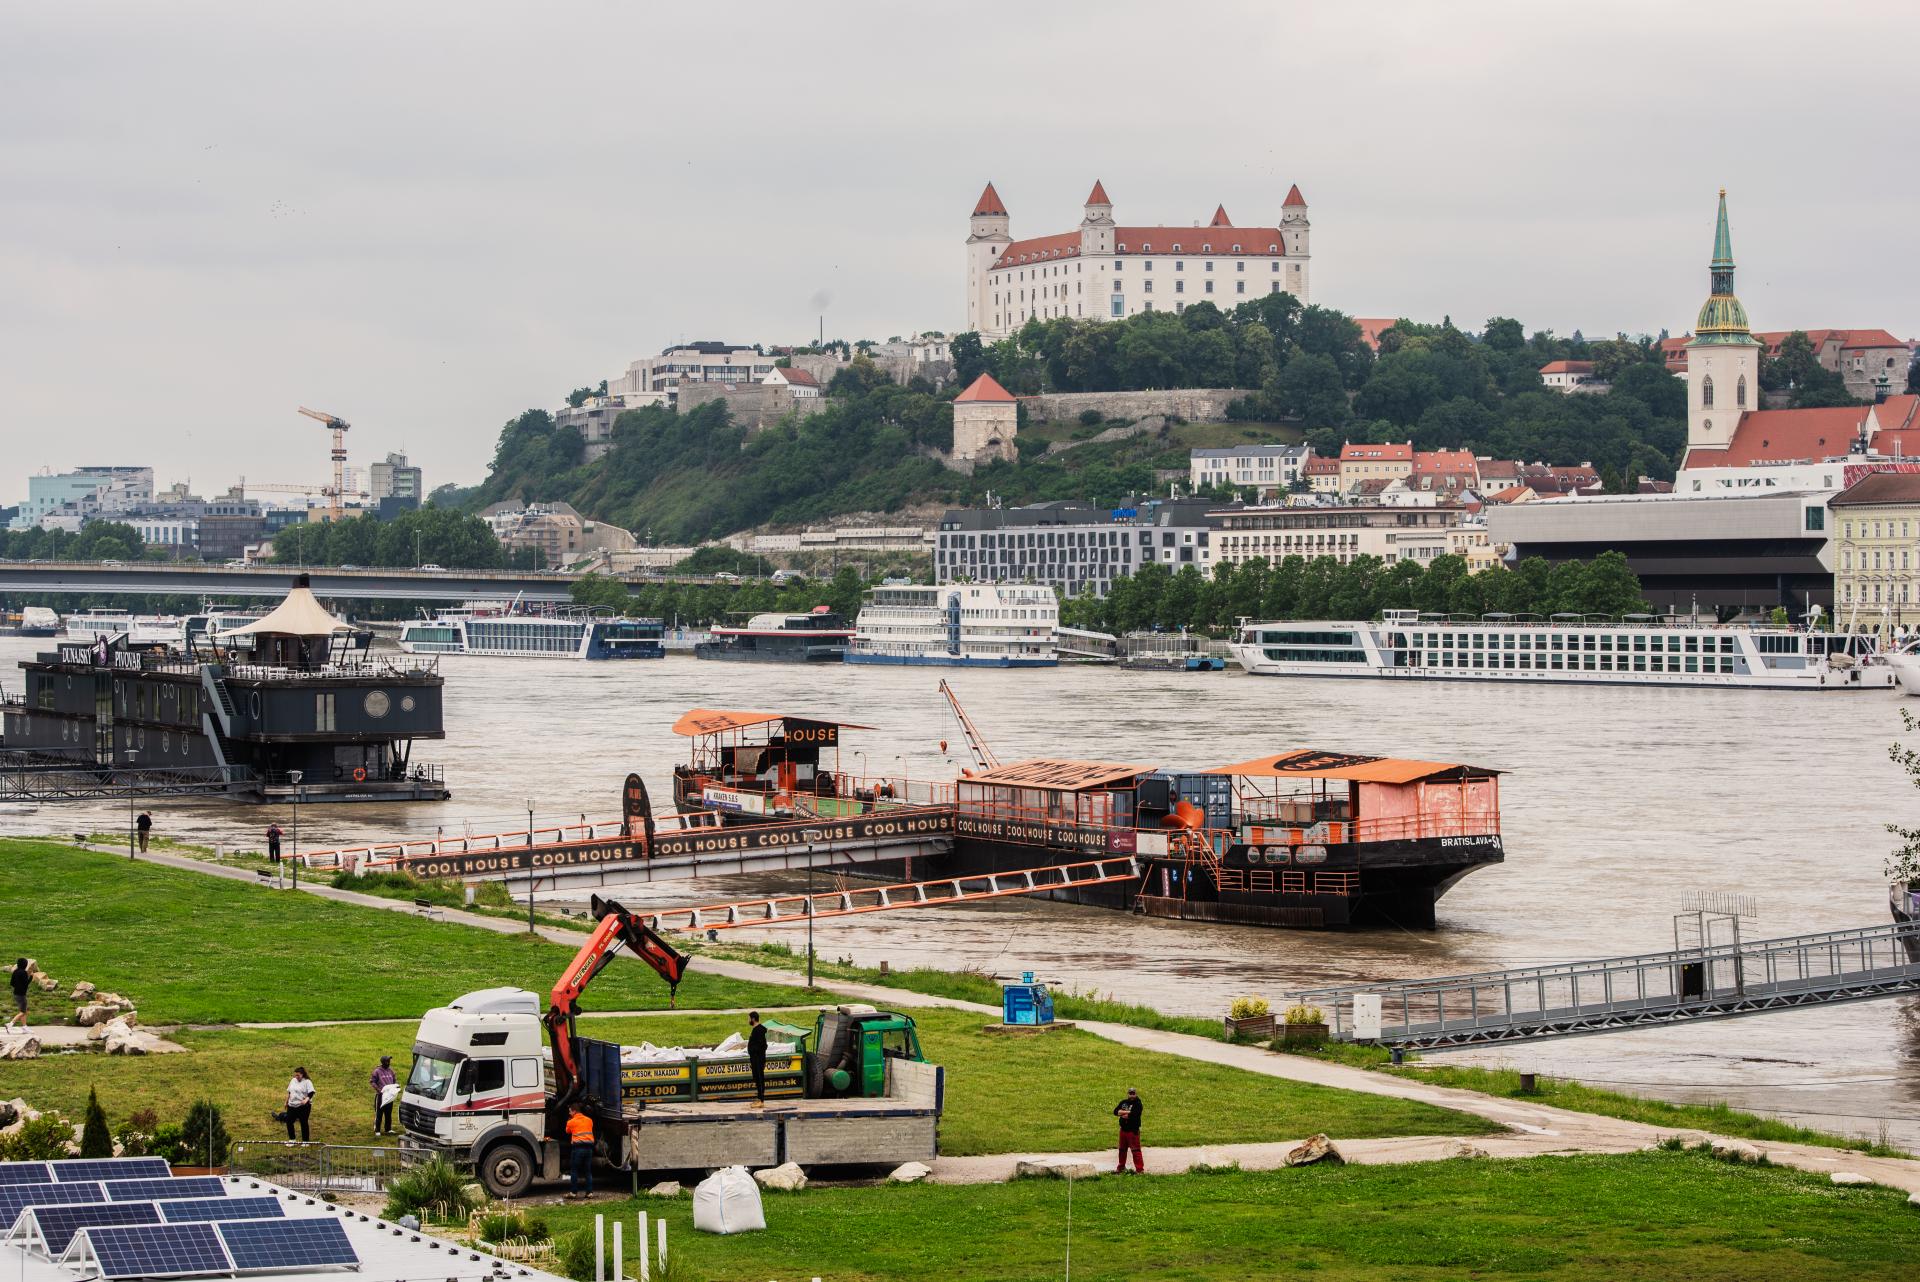 Dunaj bude kulminovať neskôr, povedal Taraba. Na povodňovej vlne z Nemecka štát zarobí desiatky miliónov